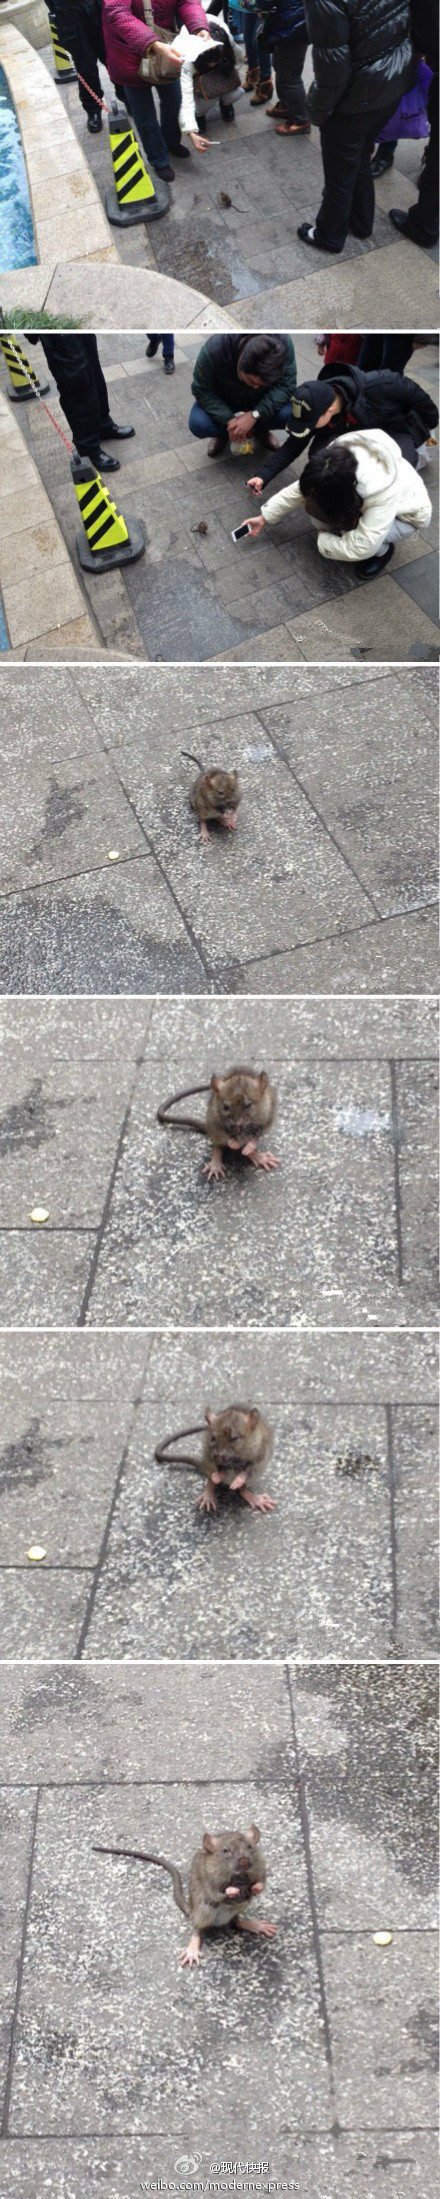 小老鼠过街遭围观举手投降萌翻路人图